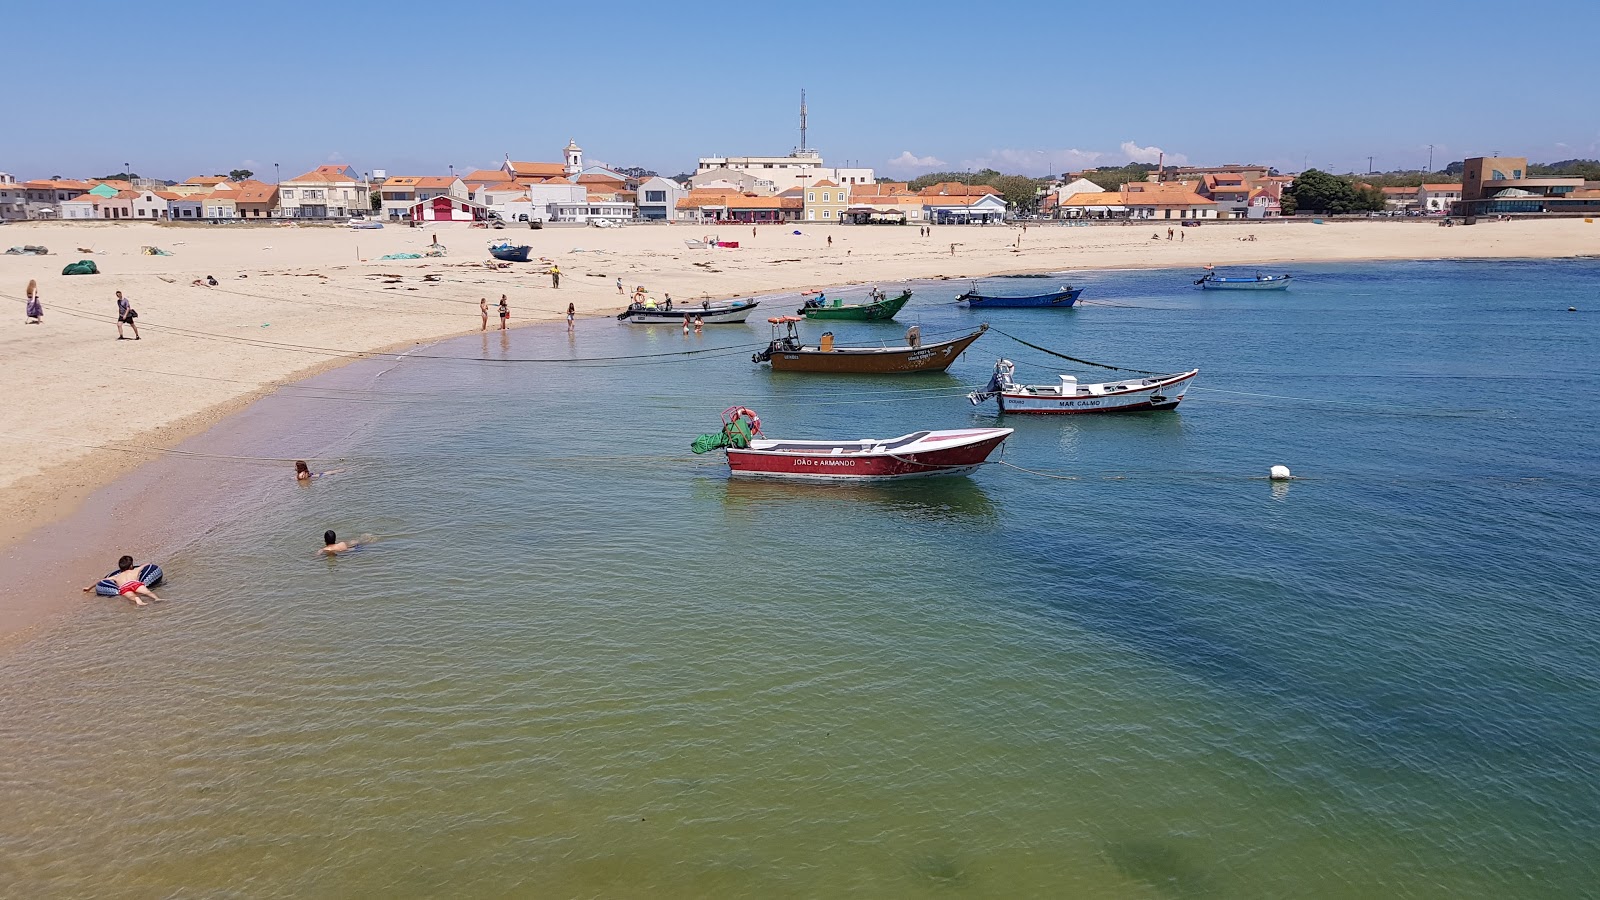 Praia da Aguda'in fotoğrafı beyaz ince kum yüzey ile